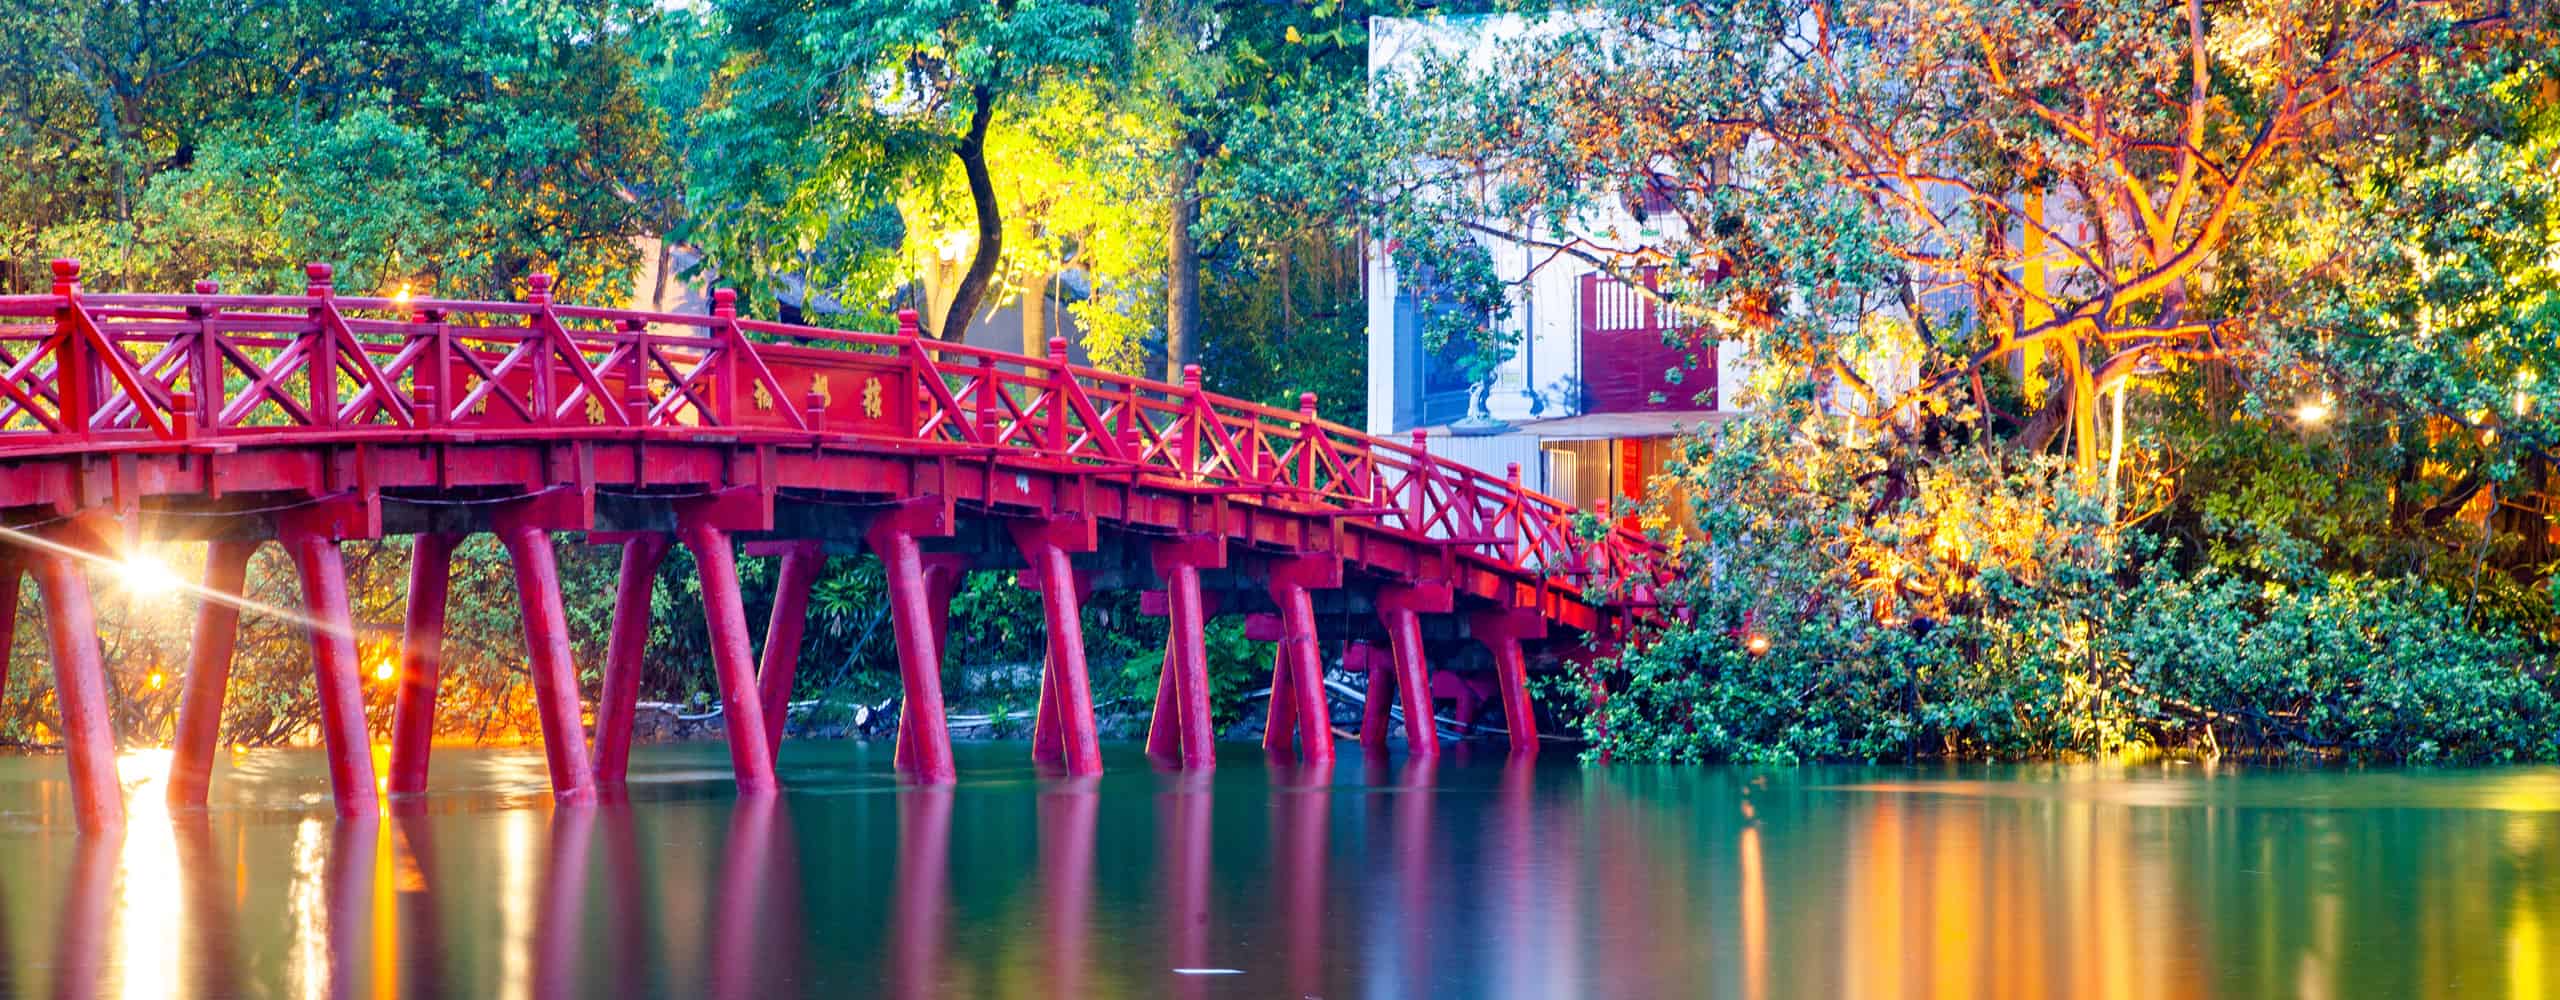 Elegant Red Bridge - Hanoi, Vietnam